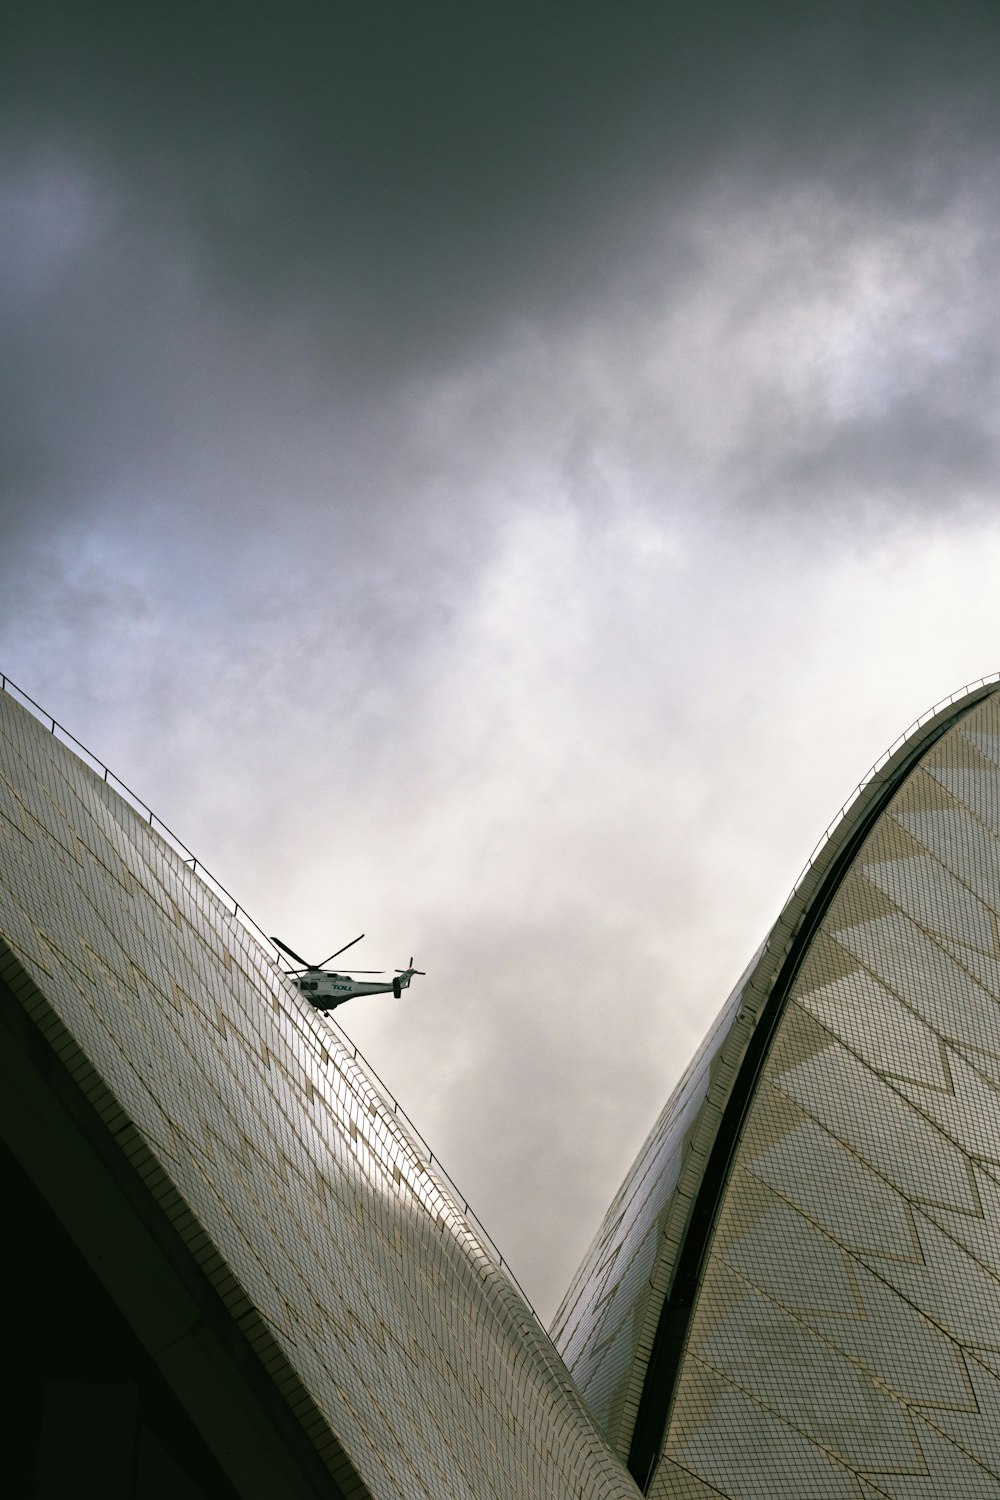 구름 낀 하늘 아래 건물 위를 날고 있는 비행기